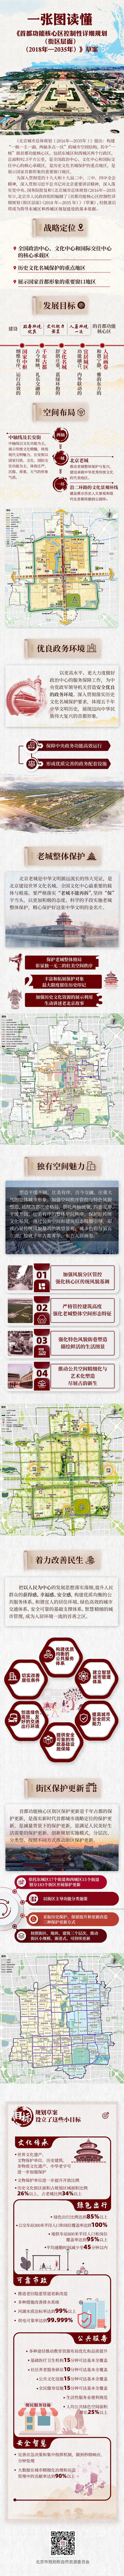 北京功能核心区规划